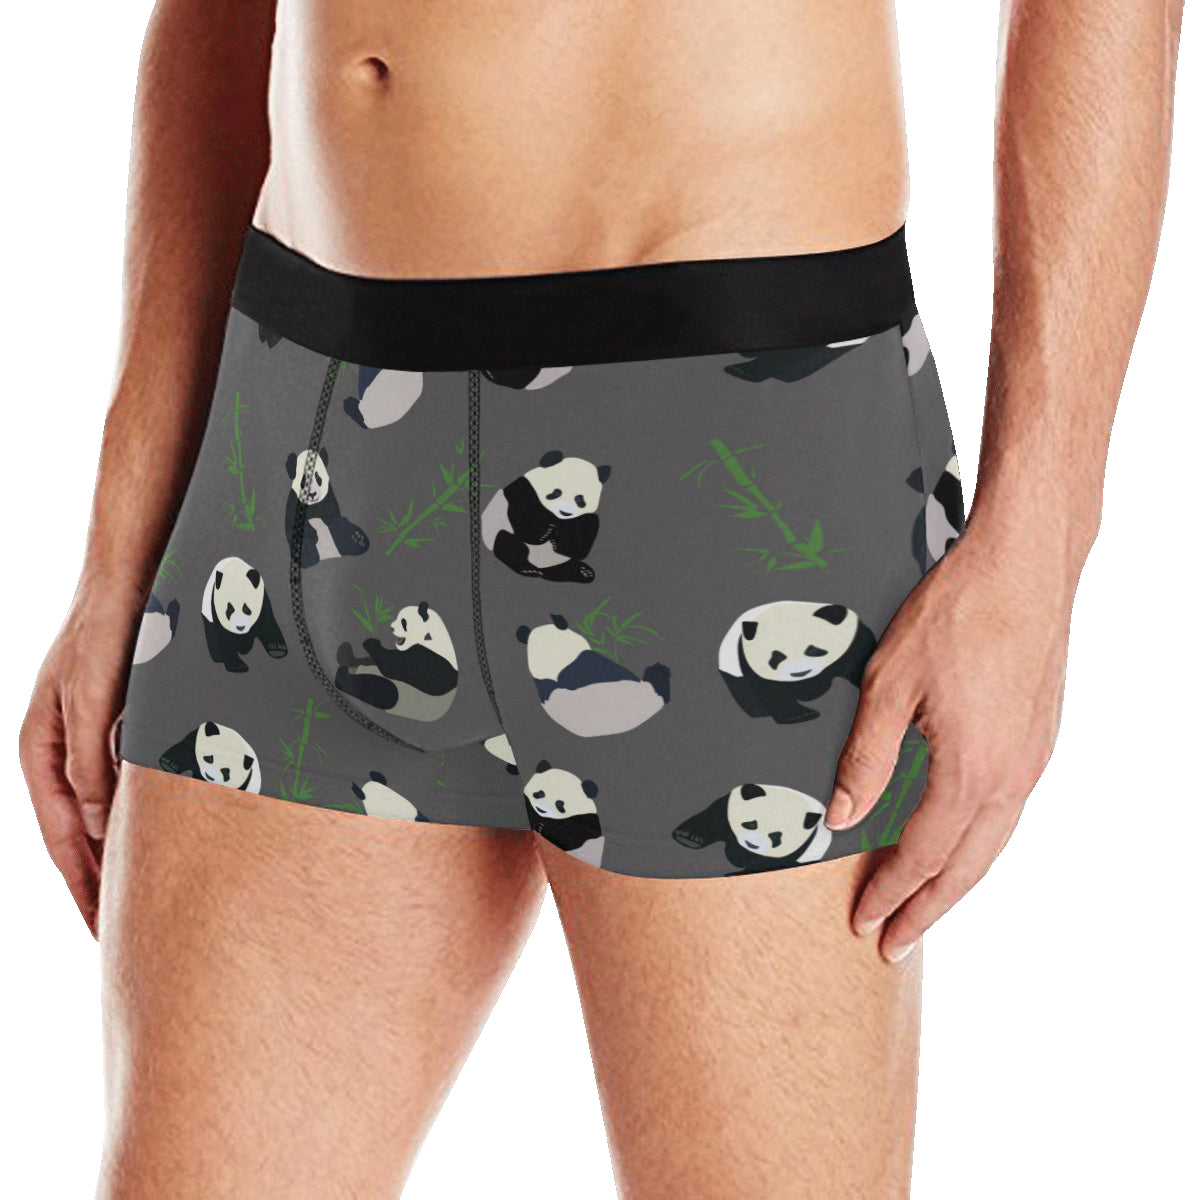 Panda Pattern Print Design A06 Men's Boxer Briefs